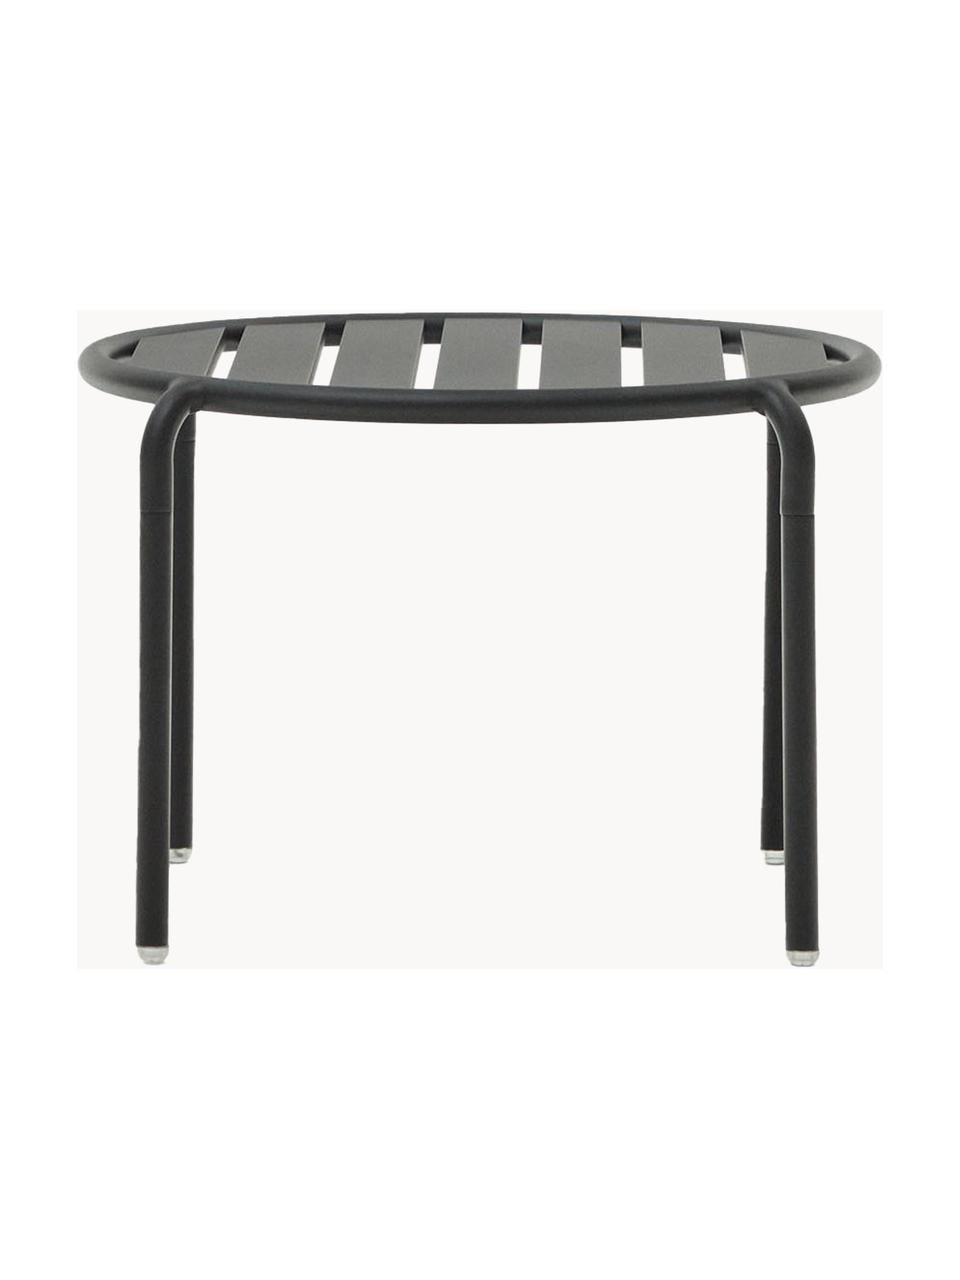 Table basse de jardin ronde Joncols, Aluminium, revêtement par poudre, Anthracite, Ø 68 cm